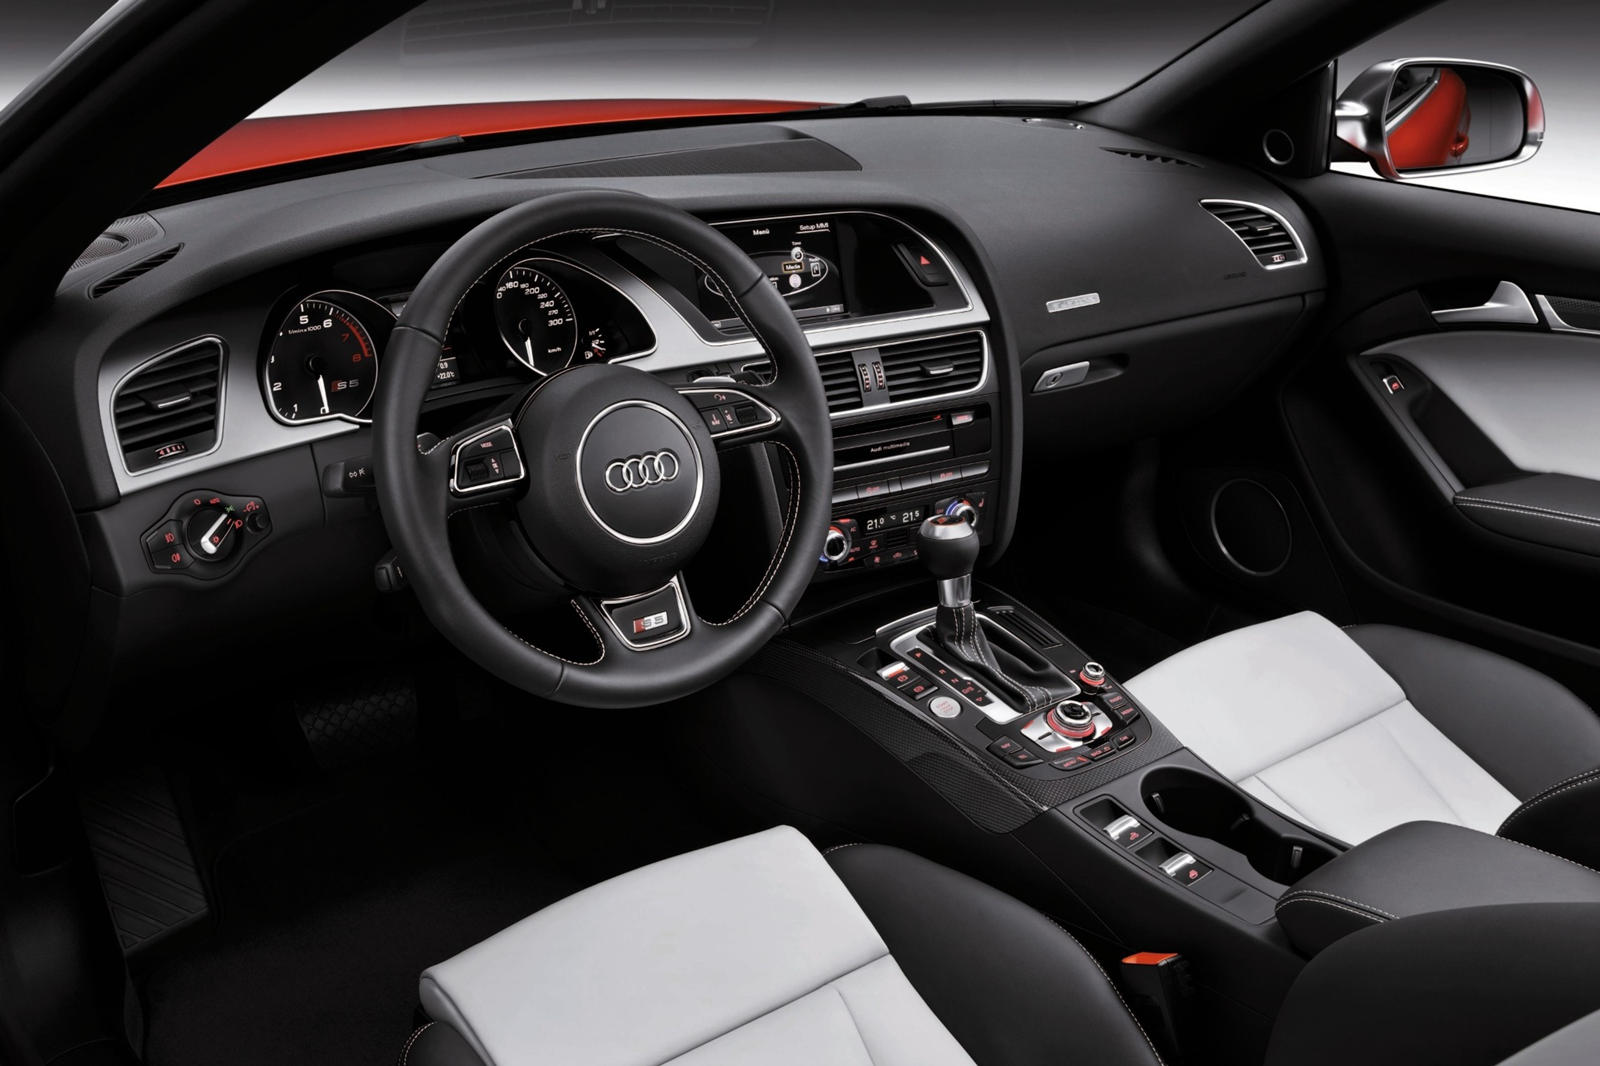 2014 Audi S5 Convertible Dashboard